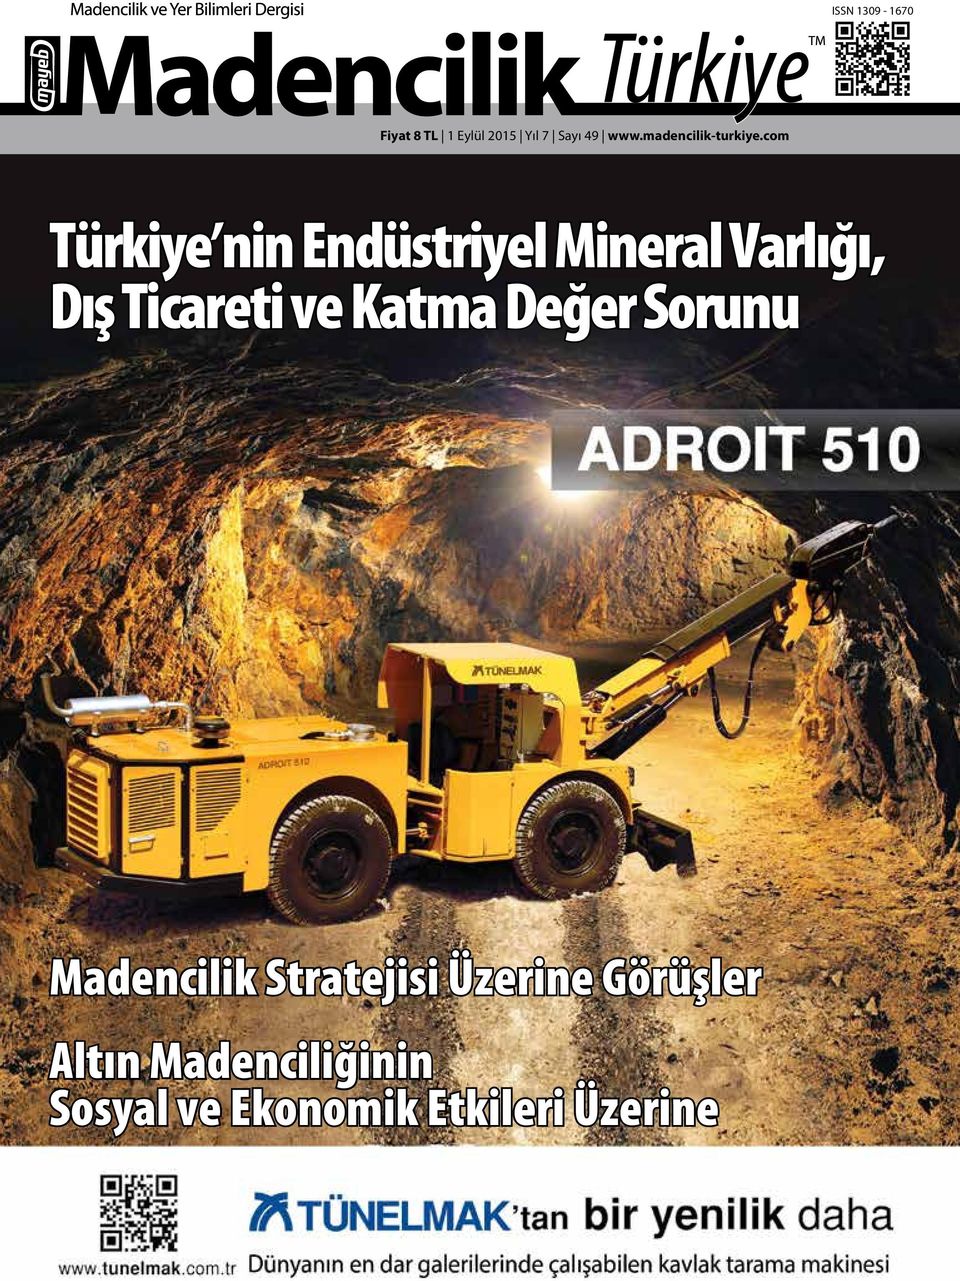 com Türkiye nin Endüstriyel Mineral Varlığı, Dış Ticareti